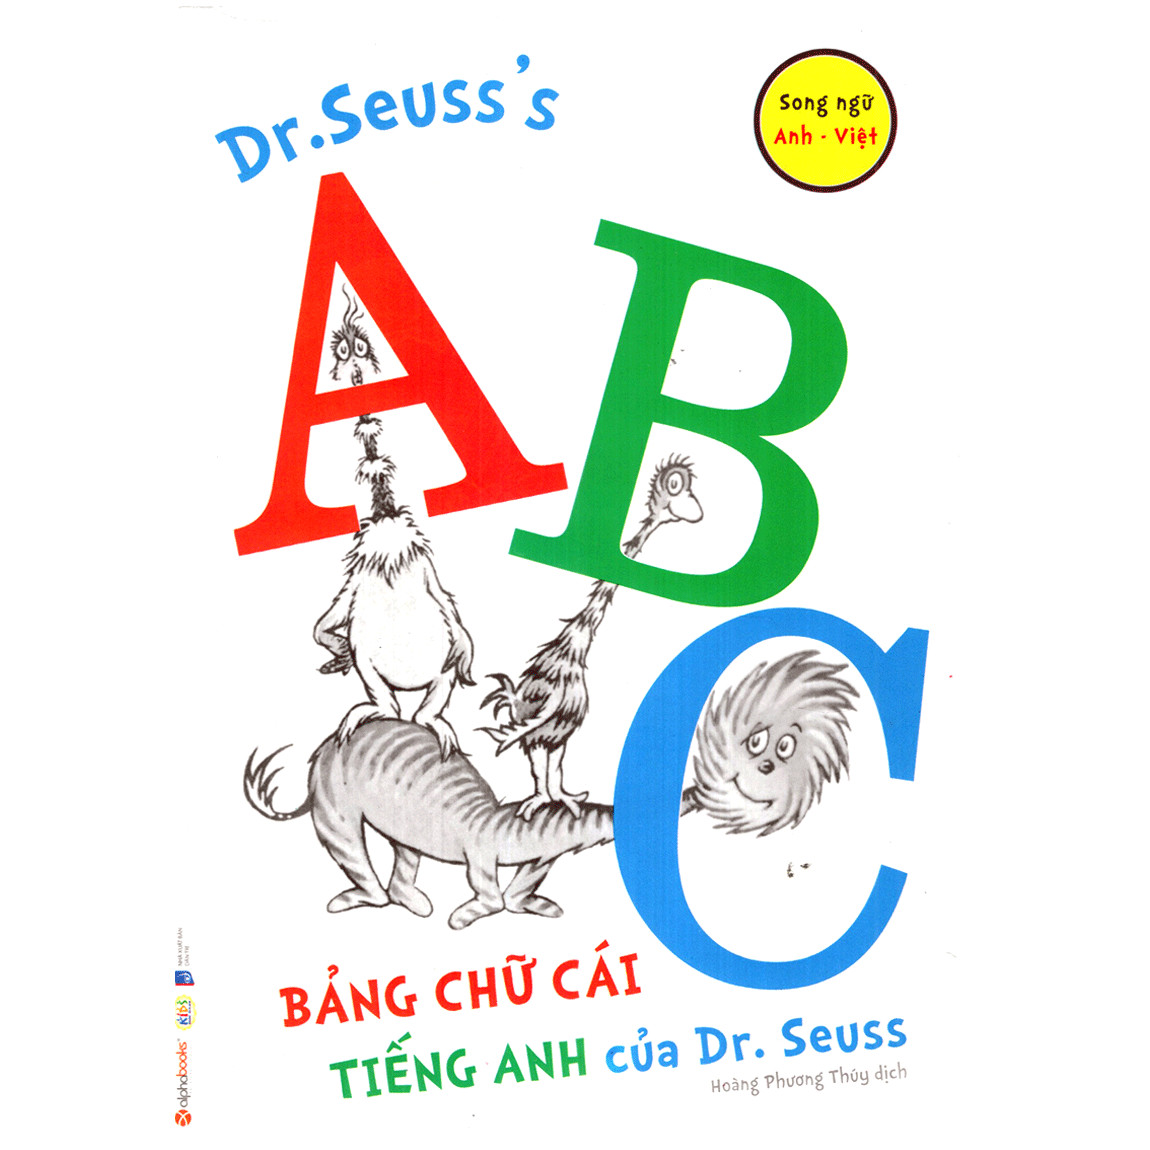 Dr. Seuss’s ABC – Bảng Chữ Cái Tiếng Anh Của Dr.Seuss (Quà tặng TickBook đặc biệt)